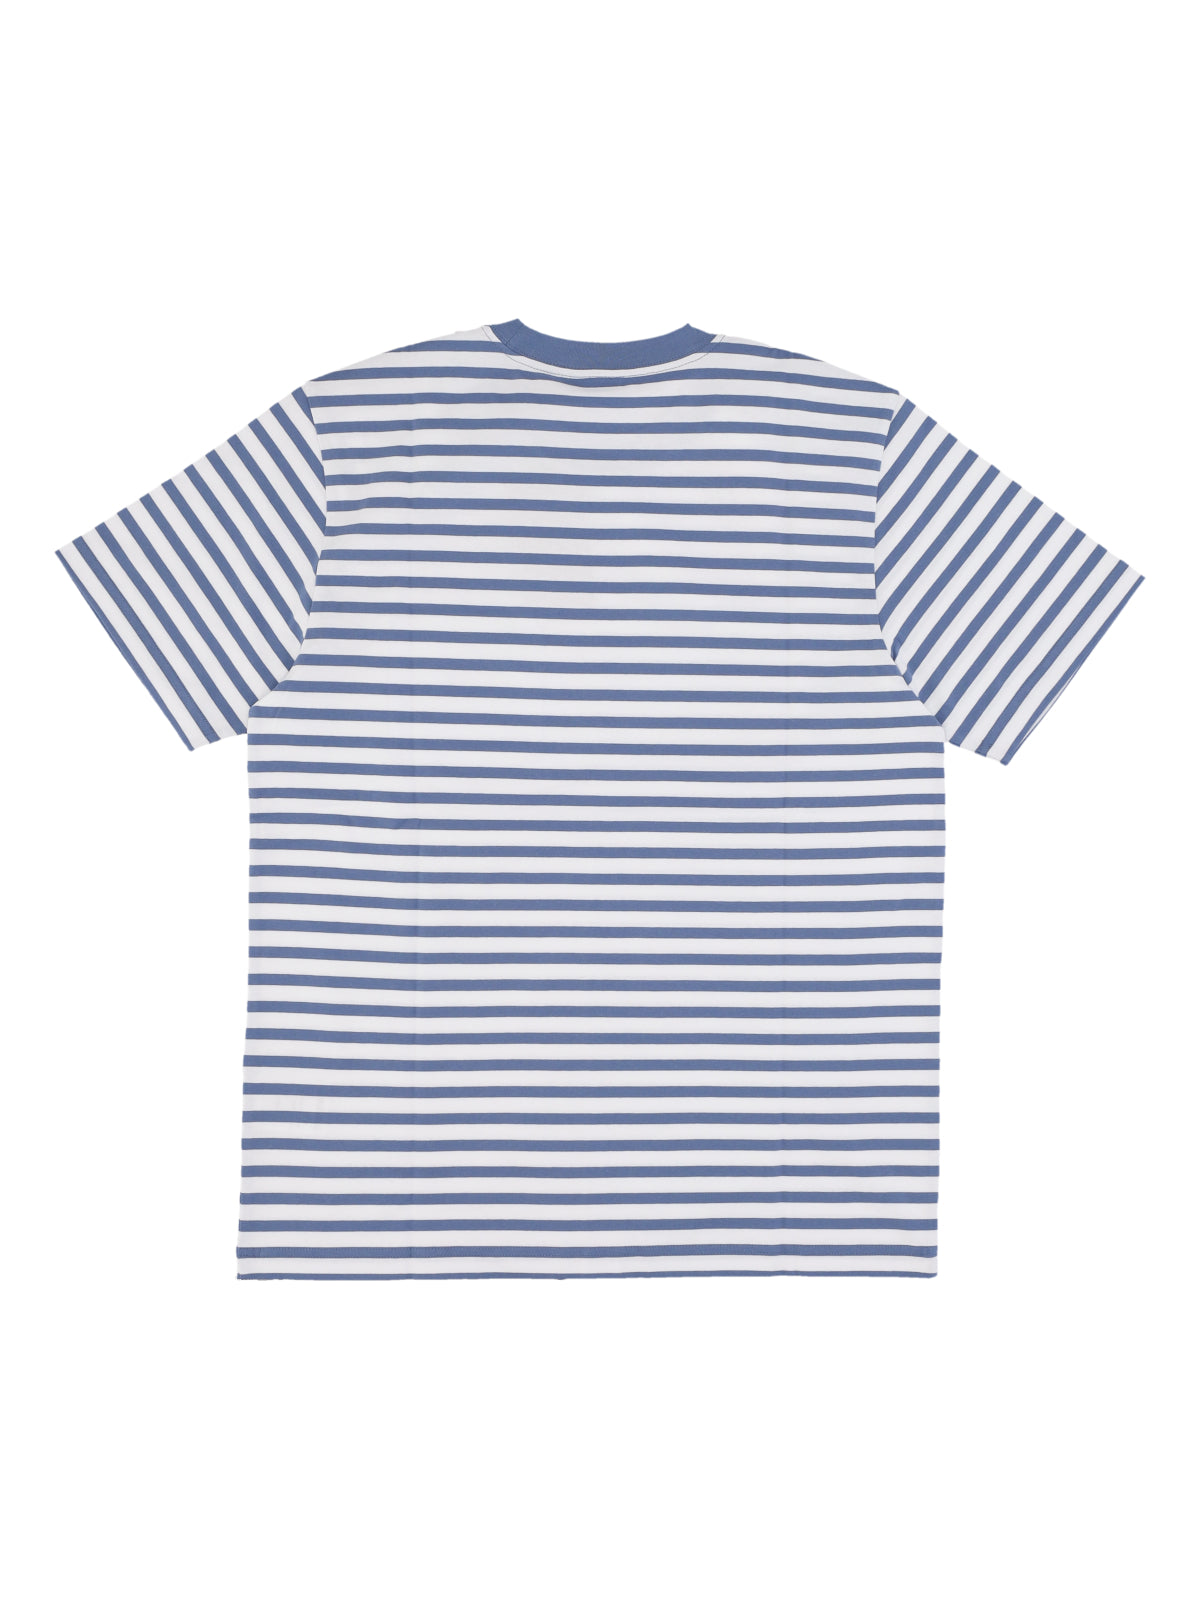 Seidler Pocket Tee Men's T-Shirt Seidler Stripe/sorrent/white